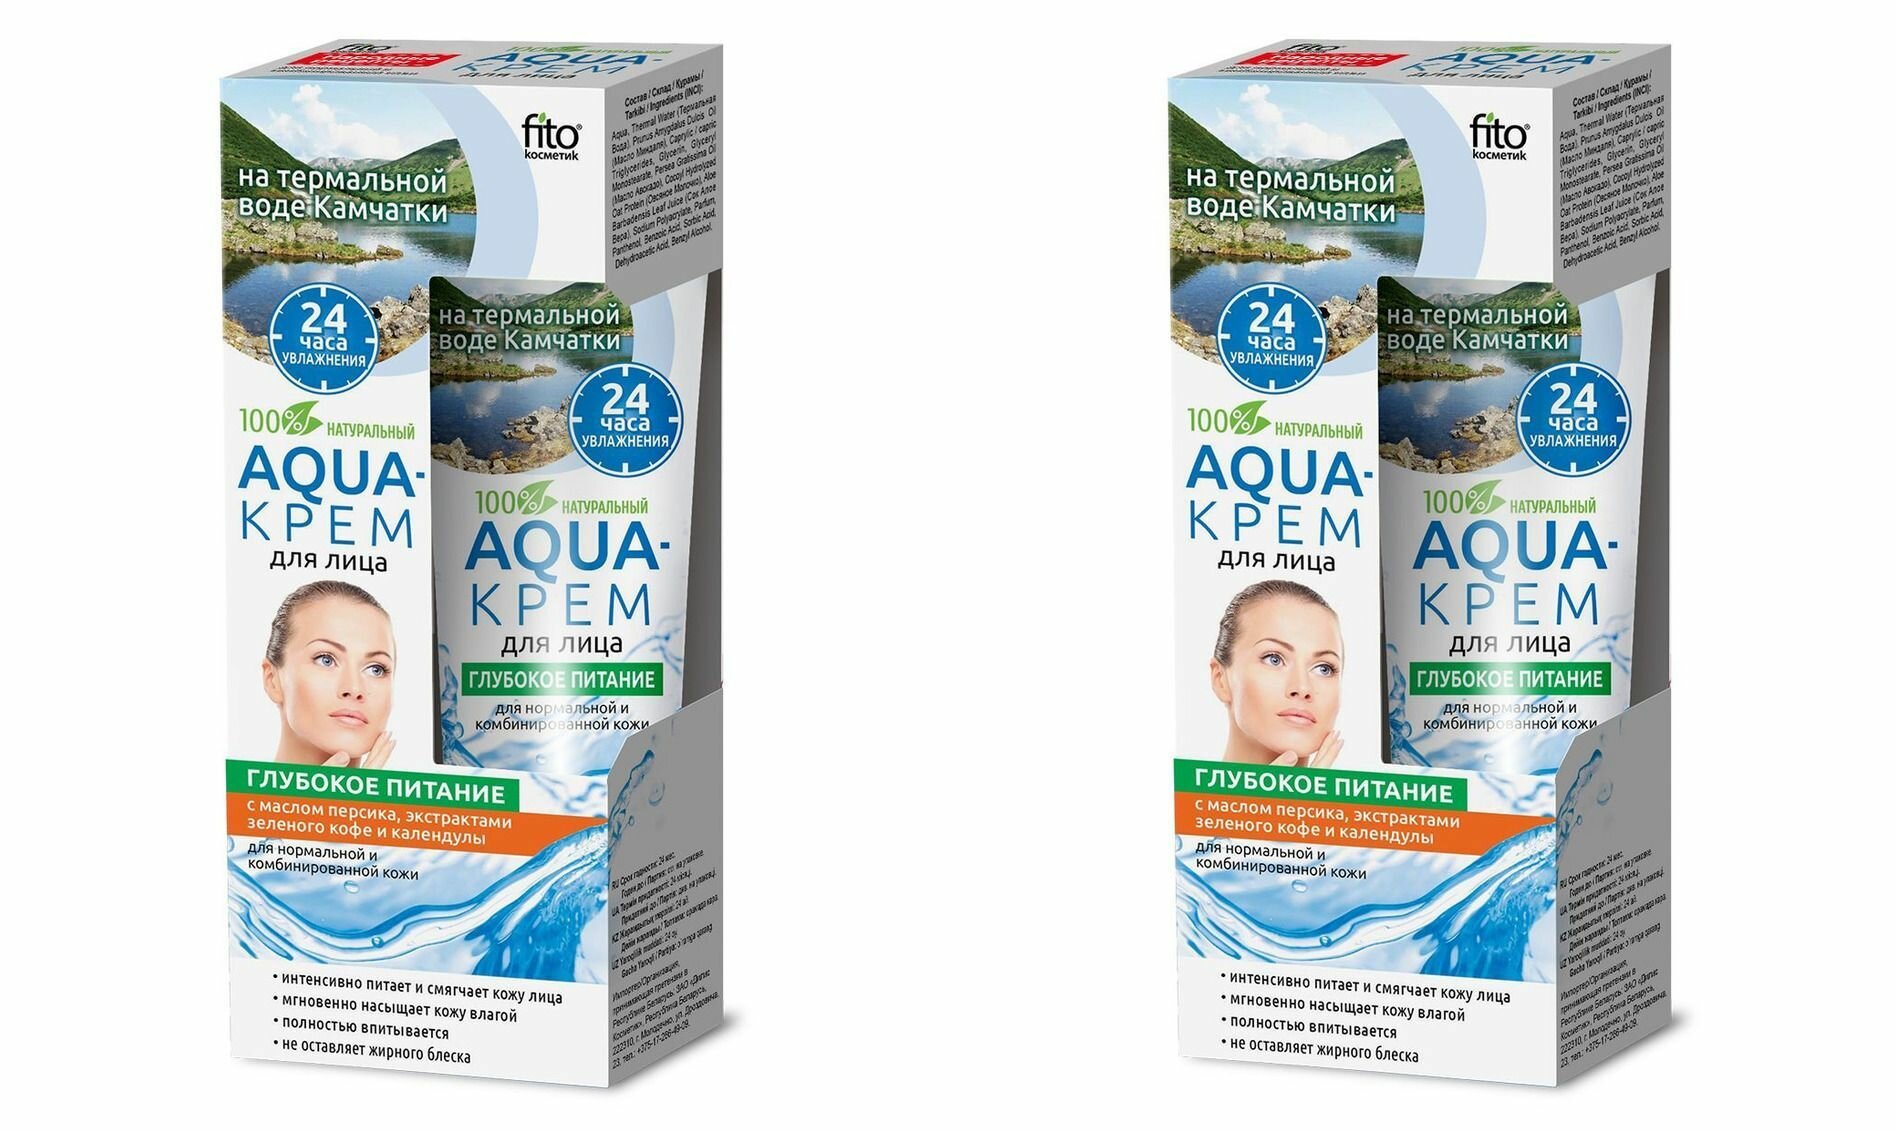 Fito Косметик Aqua-крем для лица Народные Рецепты, Глубокое питание, для нормальной и комбинированной кожи, 45 мл, 2 штуки /